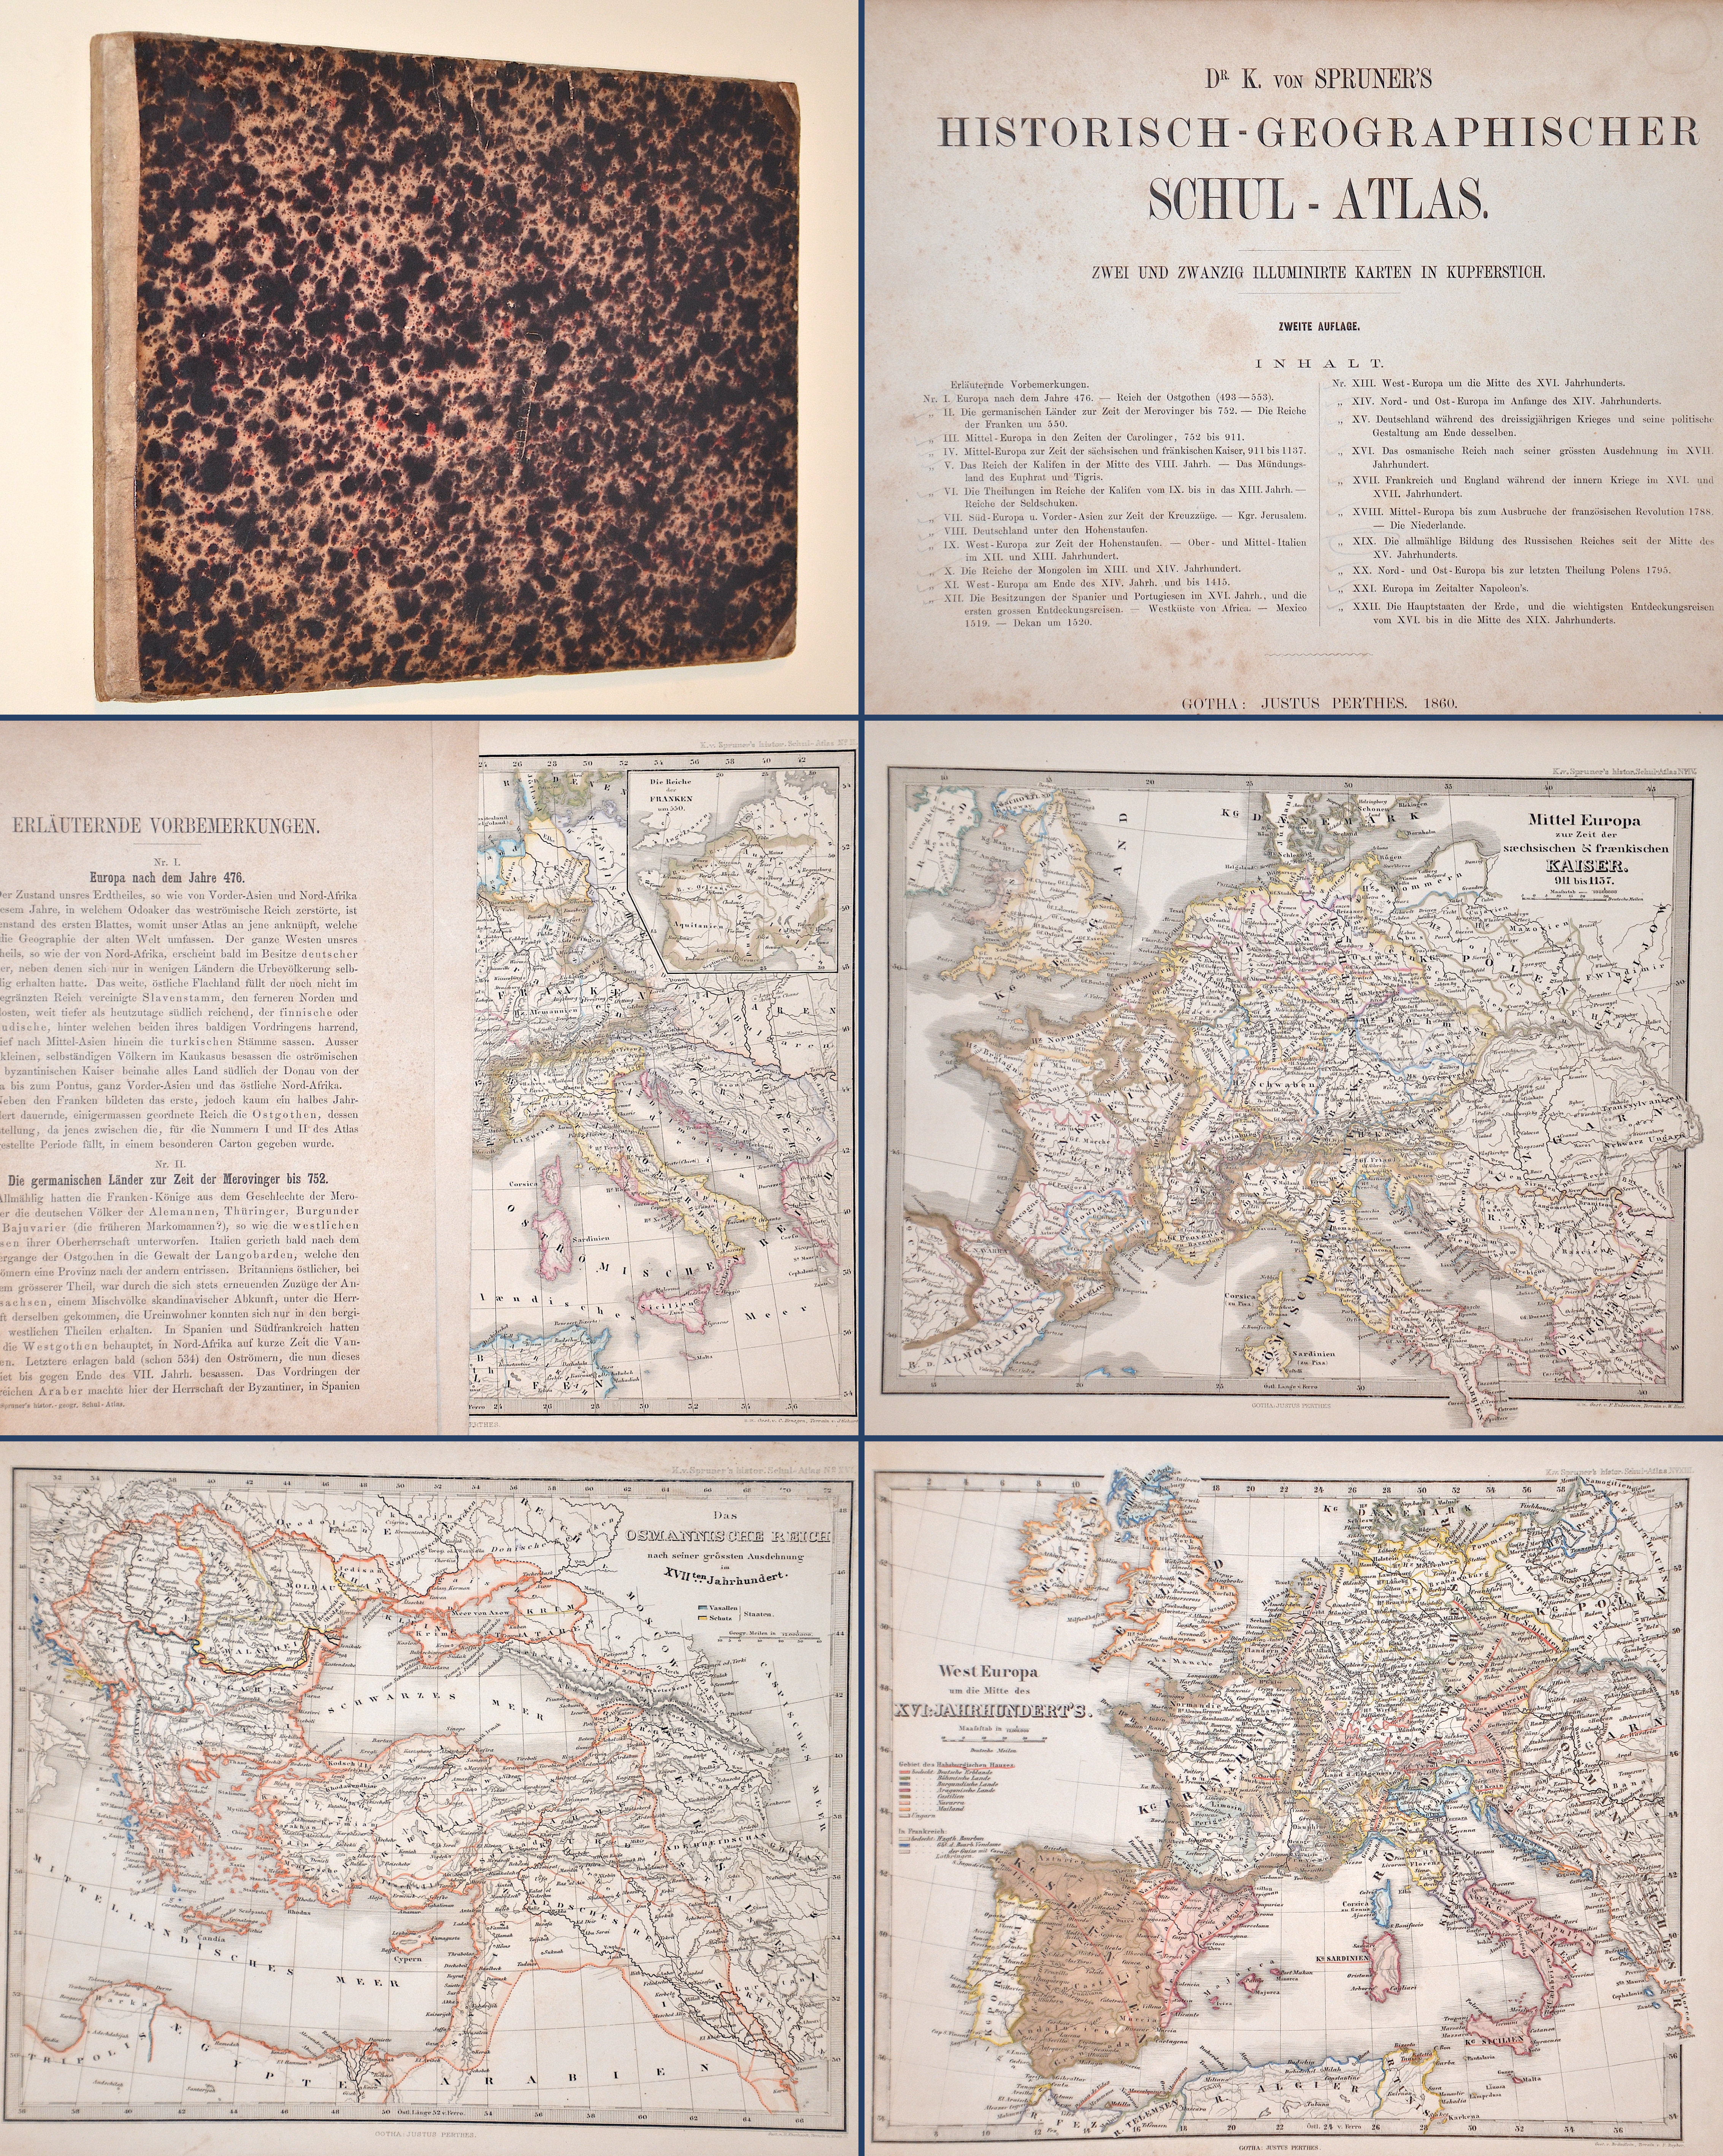 Perthes Justus Dr. K. von Spruner’s Historisch-Geographischer Schul-Atlas.